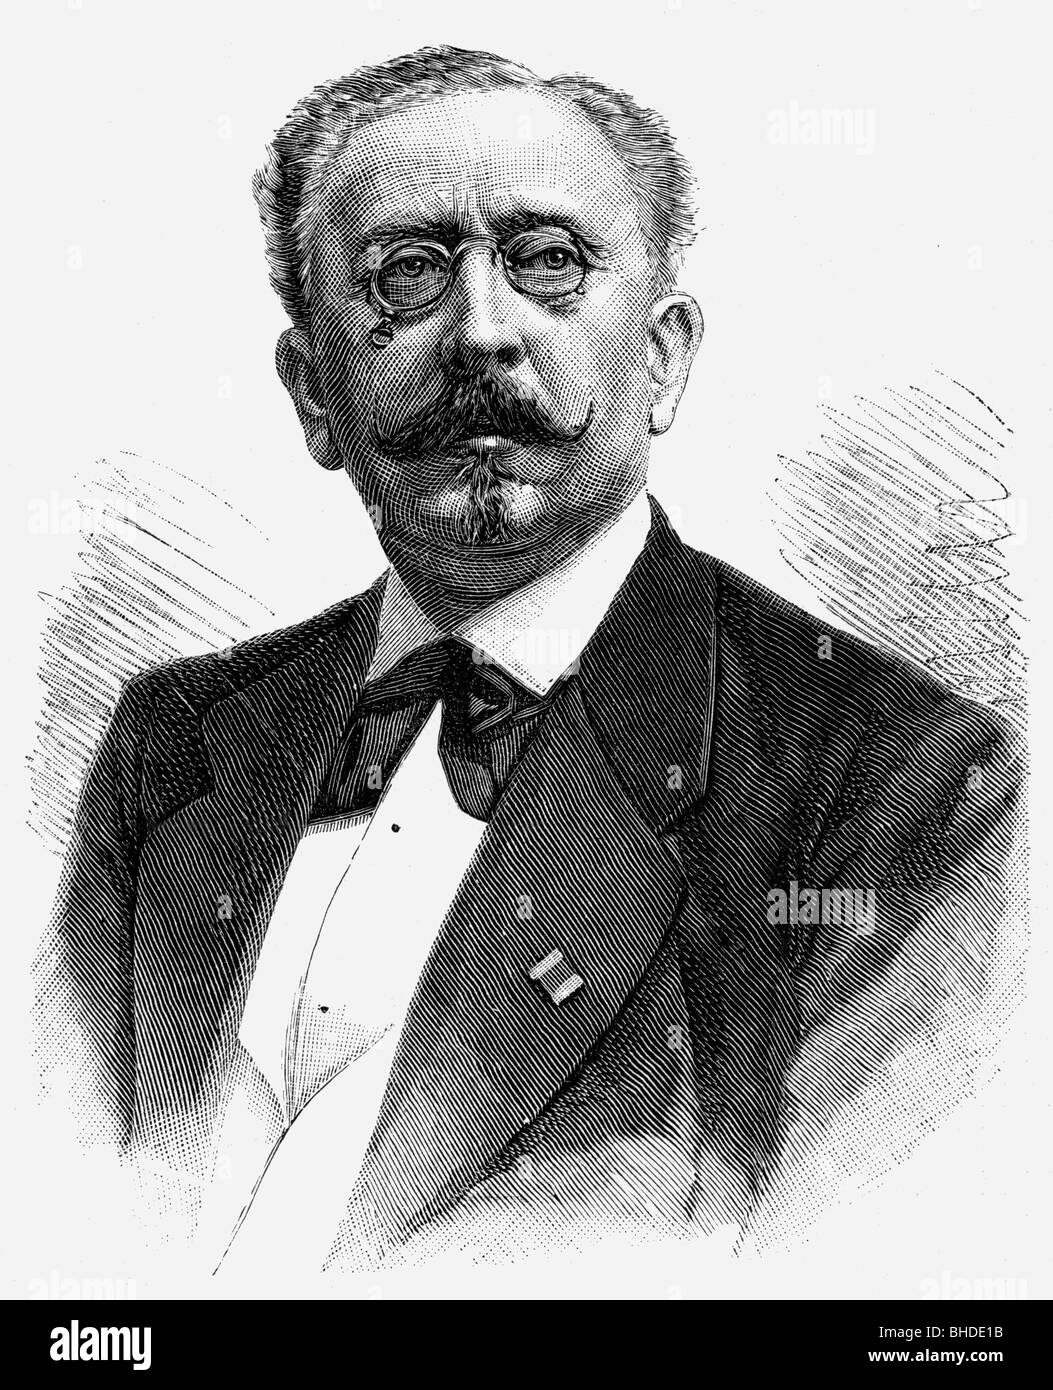 Huelsen, Botho von 10.12.1815 - 30.9.1886, regista teatrale tedesco, ritratto, incisione in legno, Foto Stock